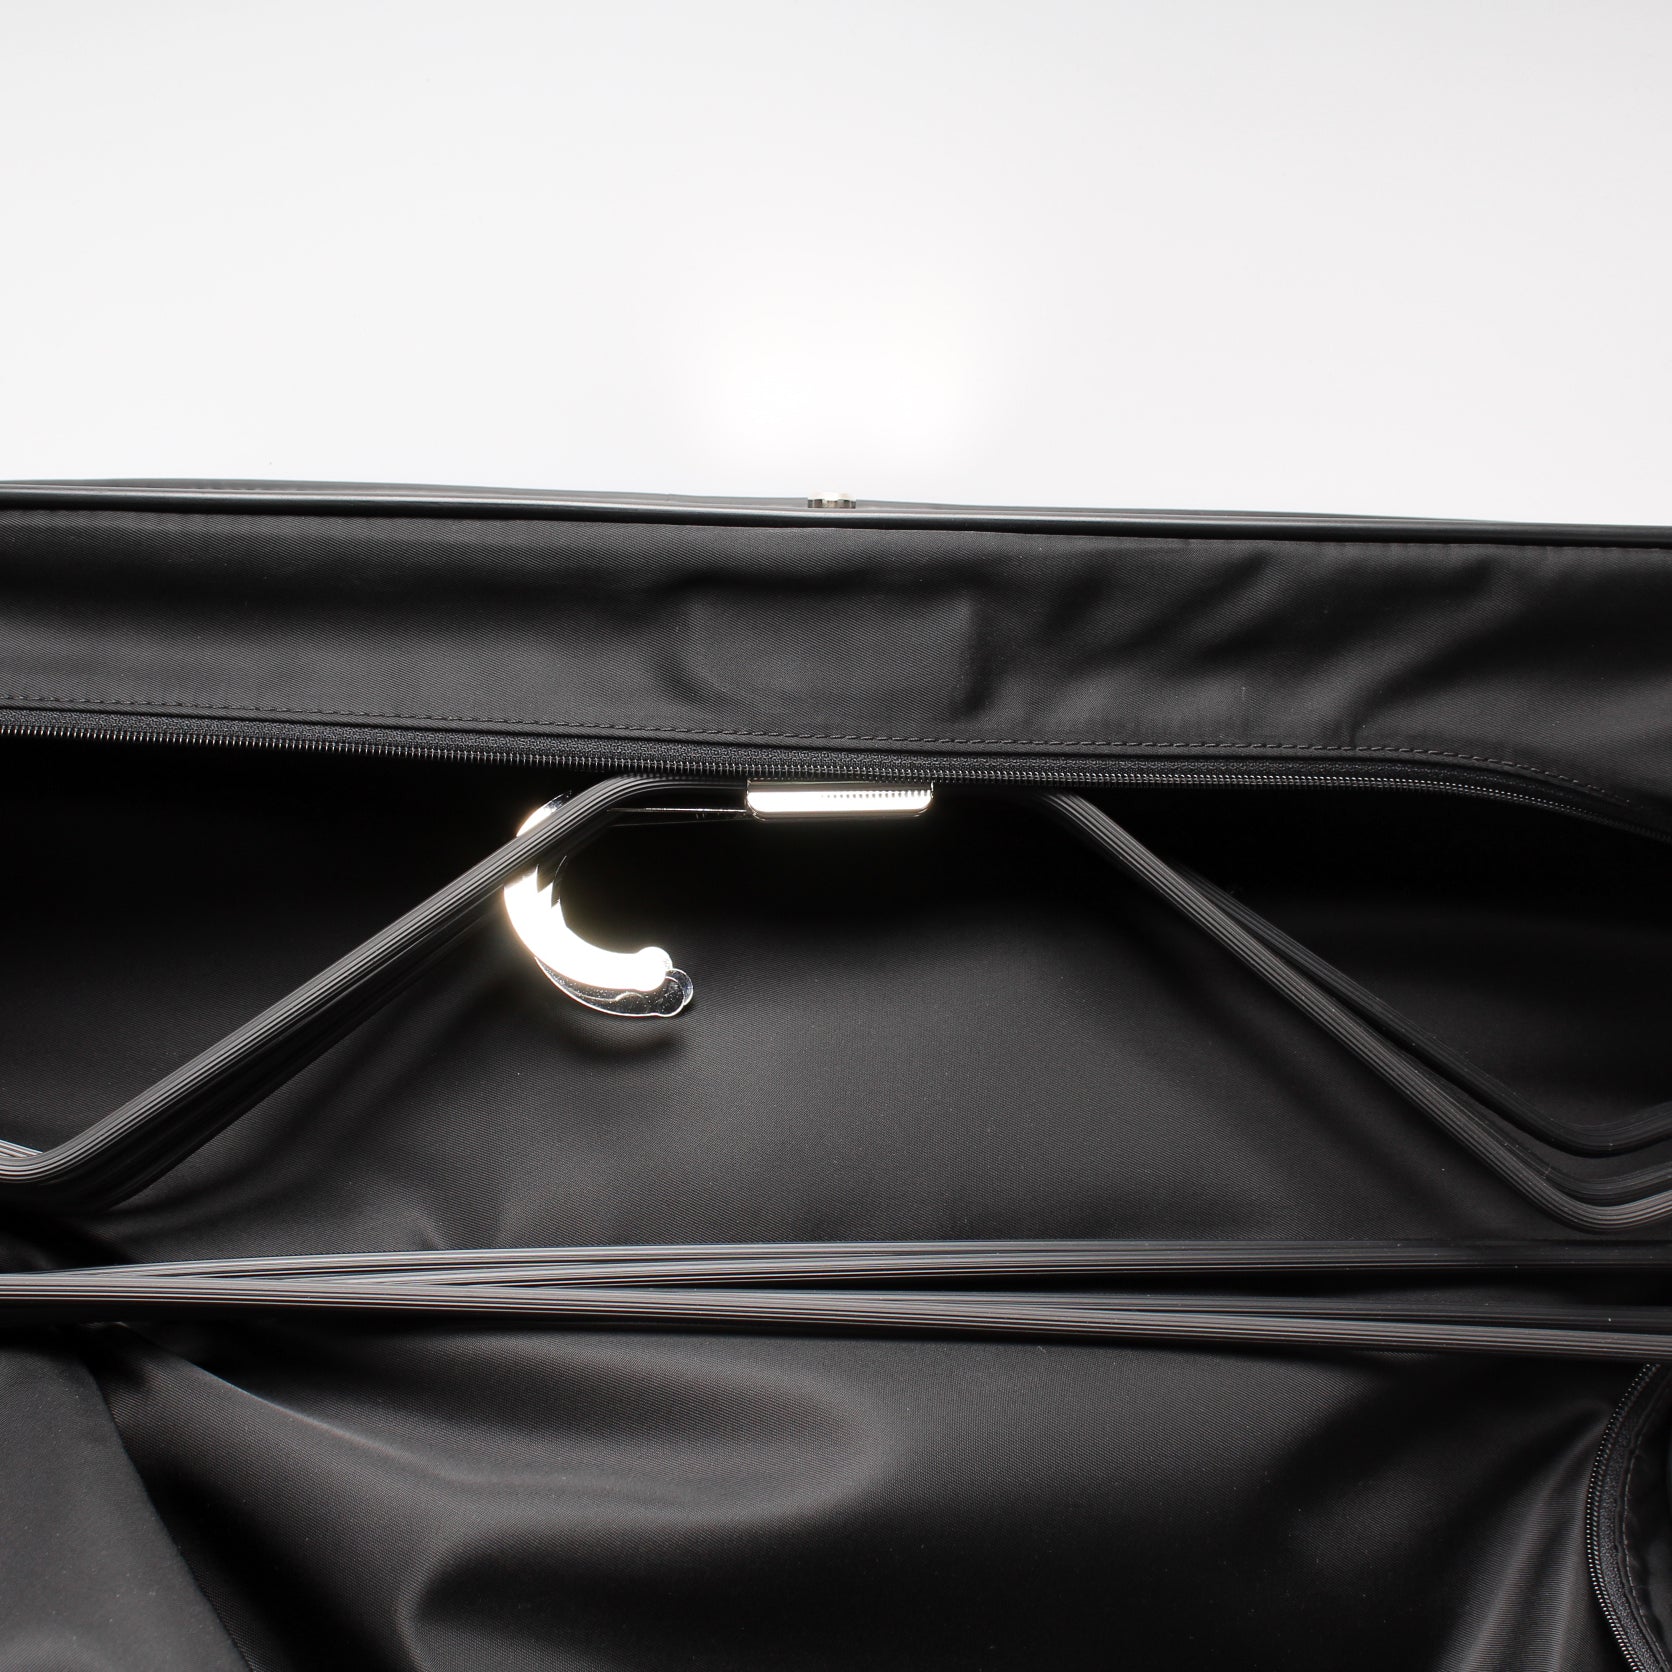 Louis Vuitton 3 Hangers Damier Graphite Garment Bag